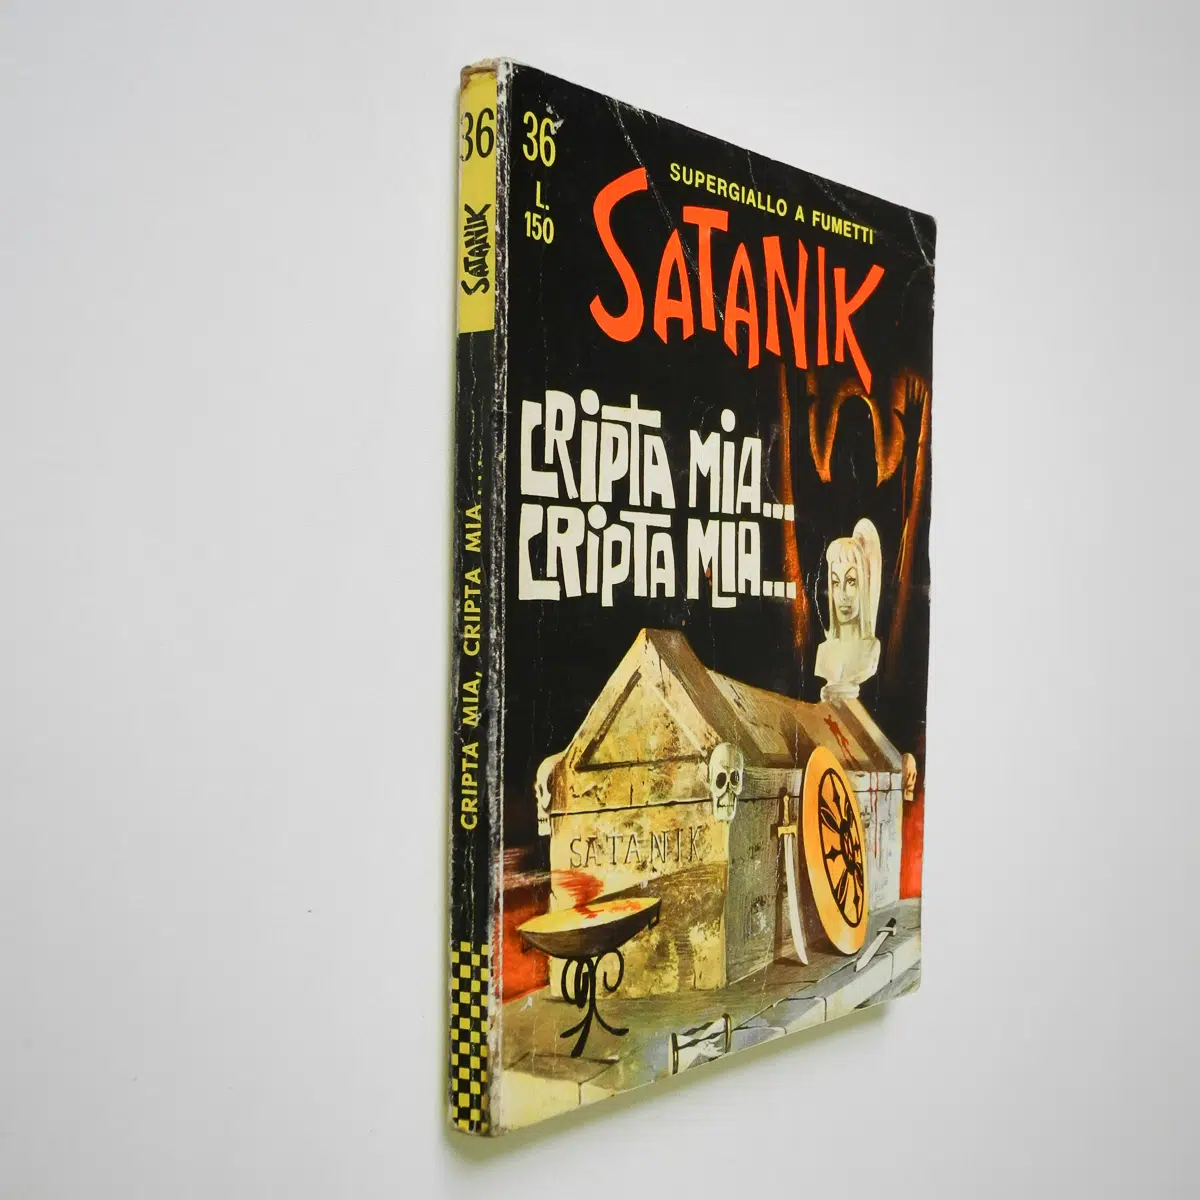 Satanik n. 36 Magnus Cripta mia, Cripta mia